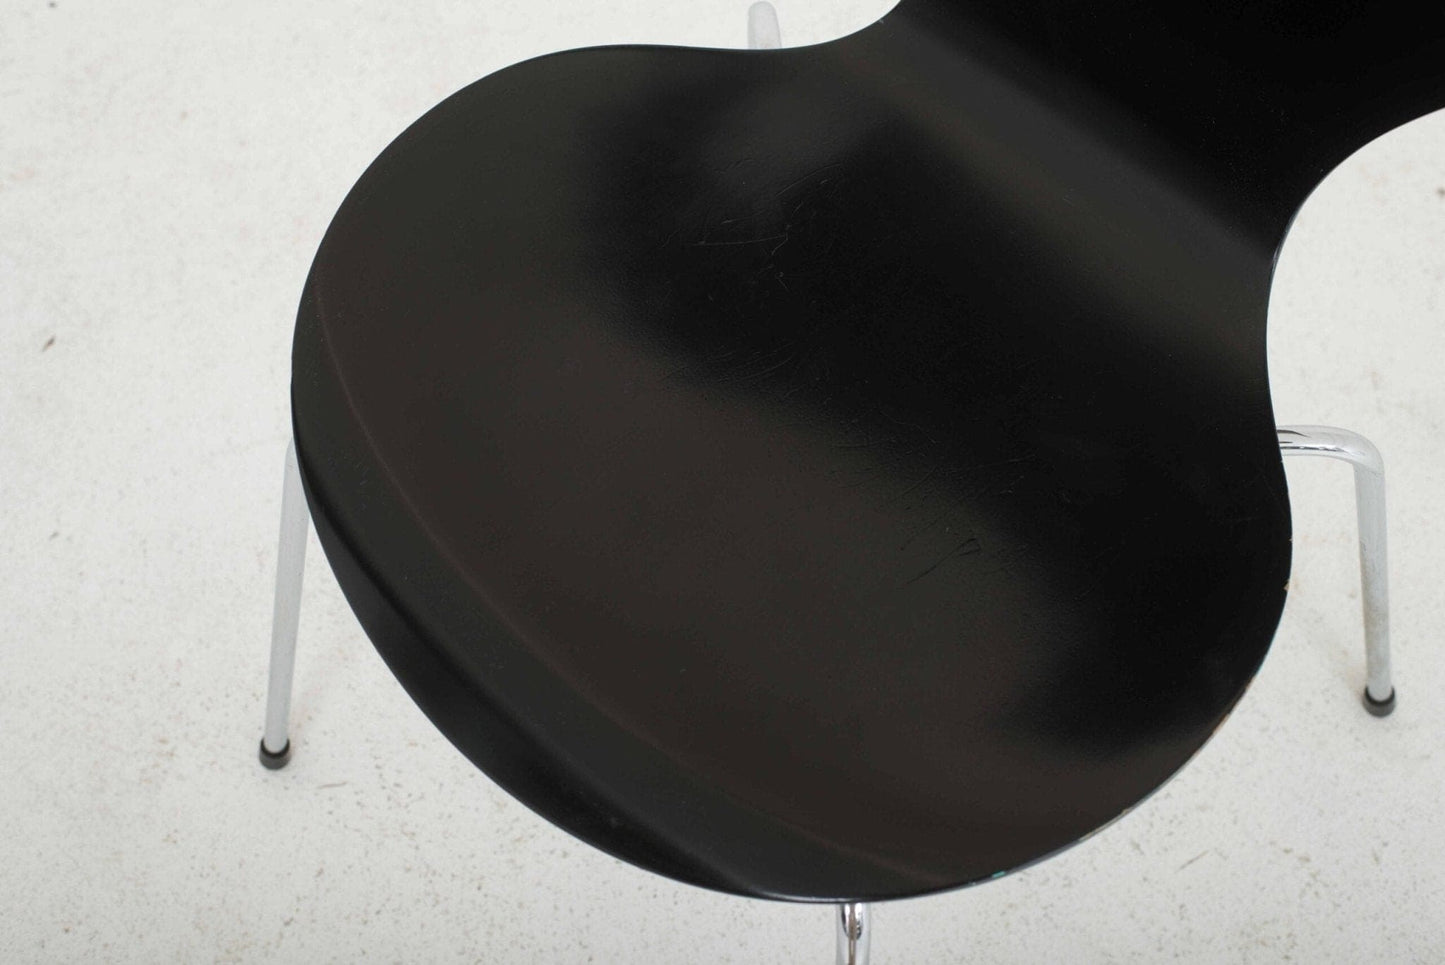 Fritz Hansen 3107 chairs by Arne Jacobsen in black